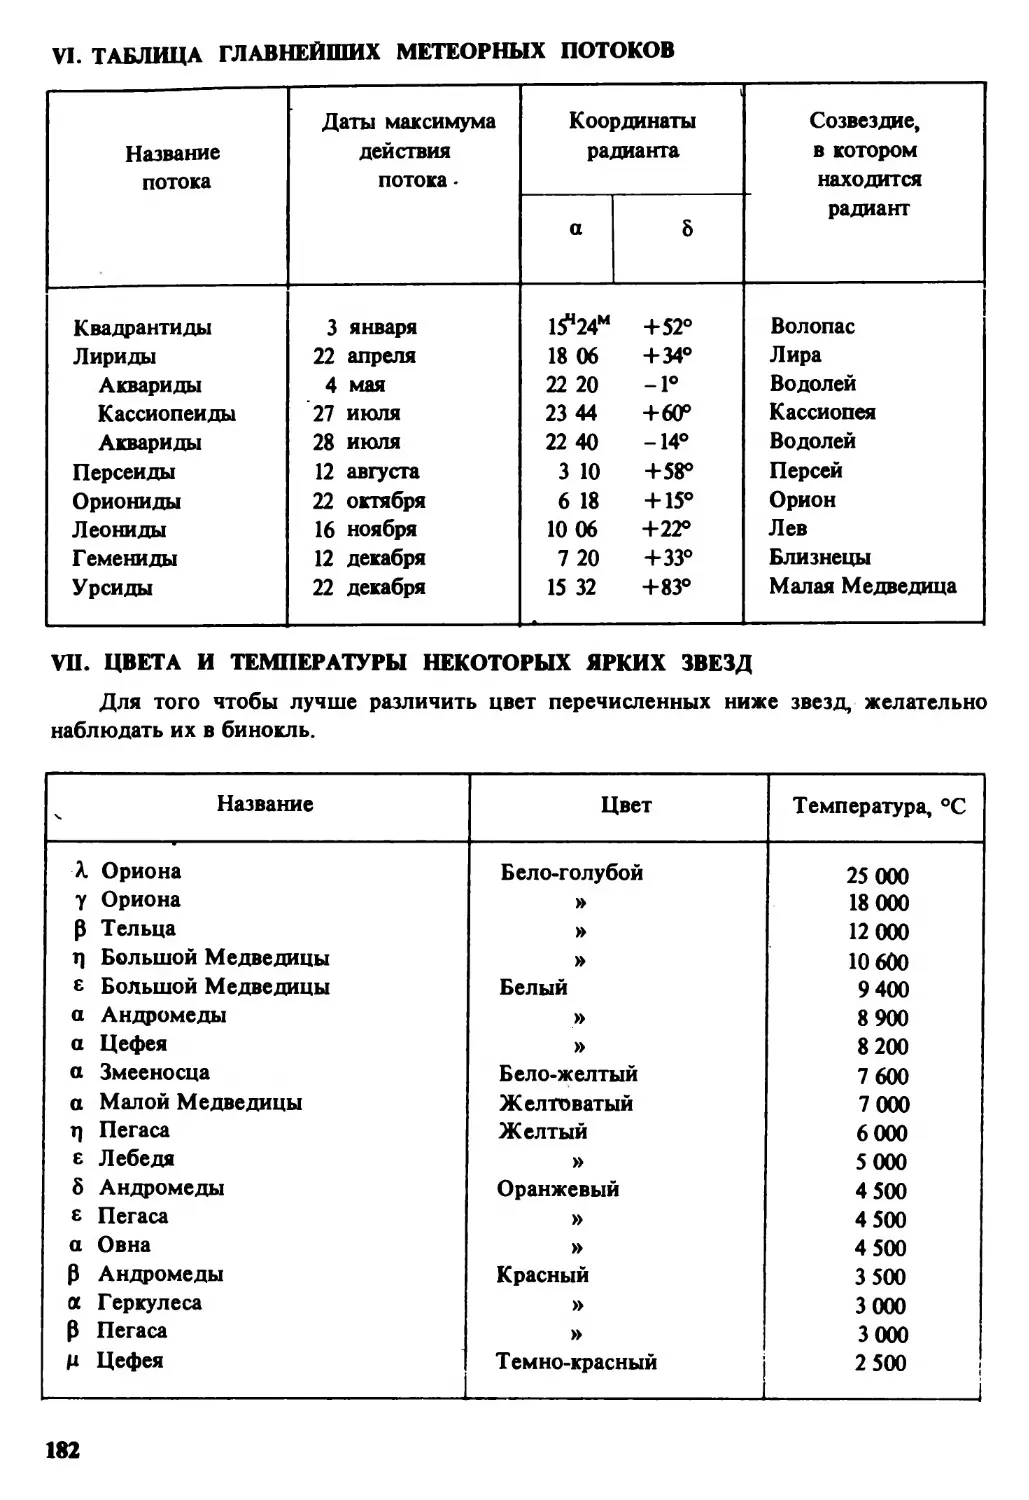 VI. Таблица главнейших метеорных потоков
VII. Цвета и температуры некоторых ярких звезд